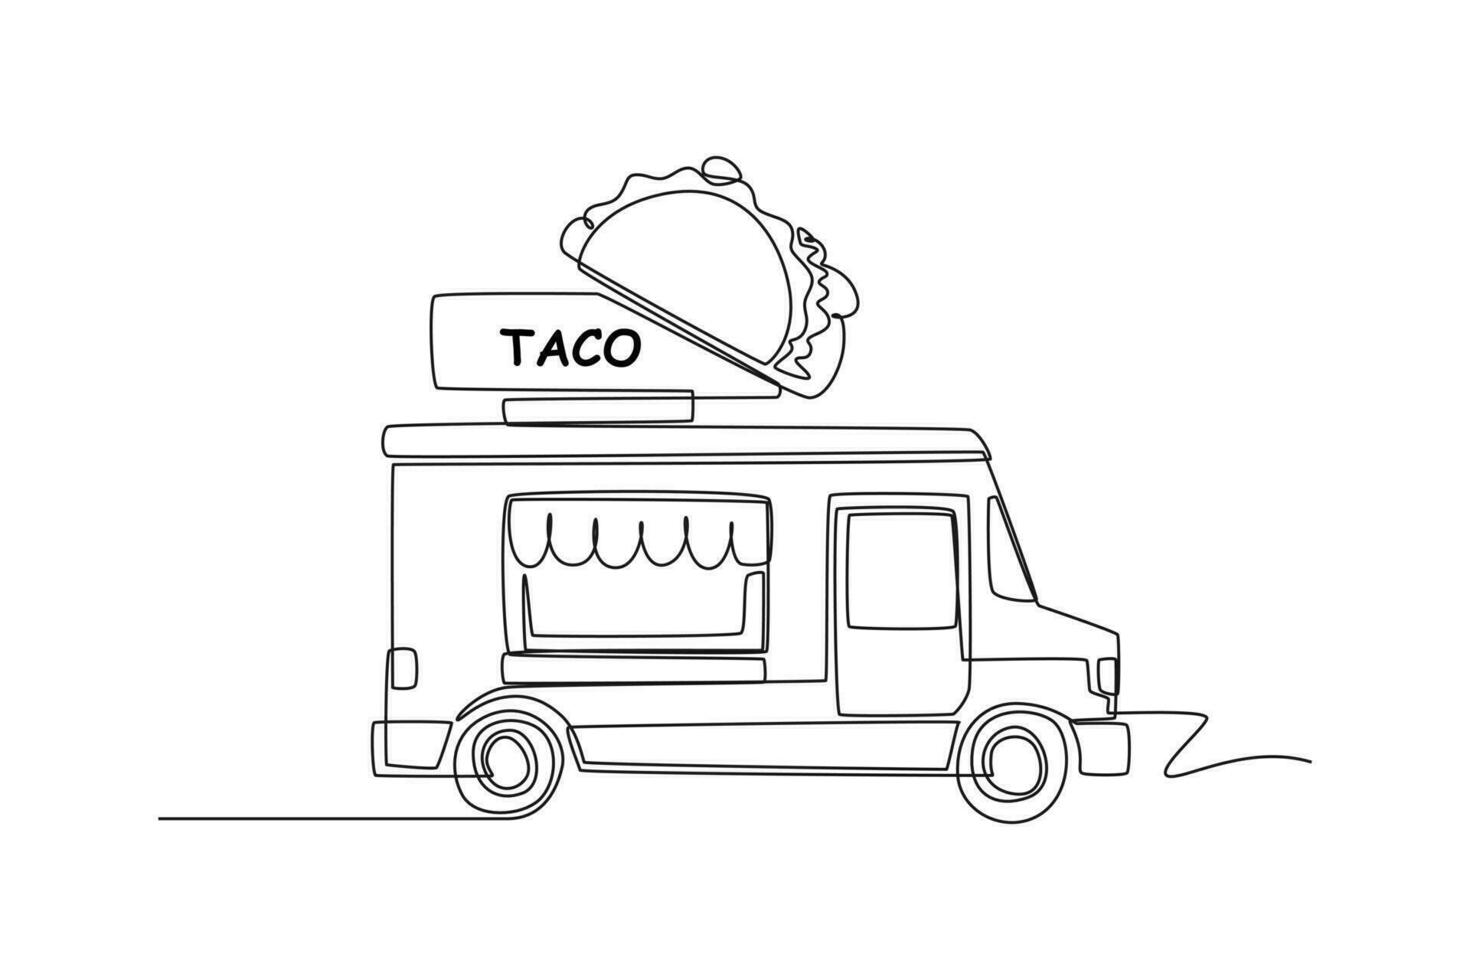 soltero uno línea dibujo comida camiones restaurante en ruedas furgonetas para calle comida venta. coche concepto. continuo línea dibujar diseño gráfico vector ilustración.